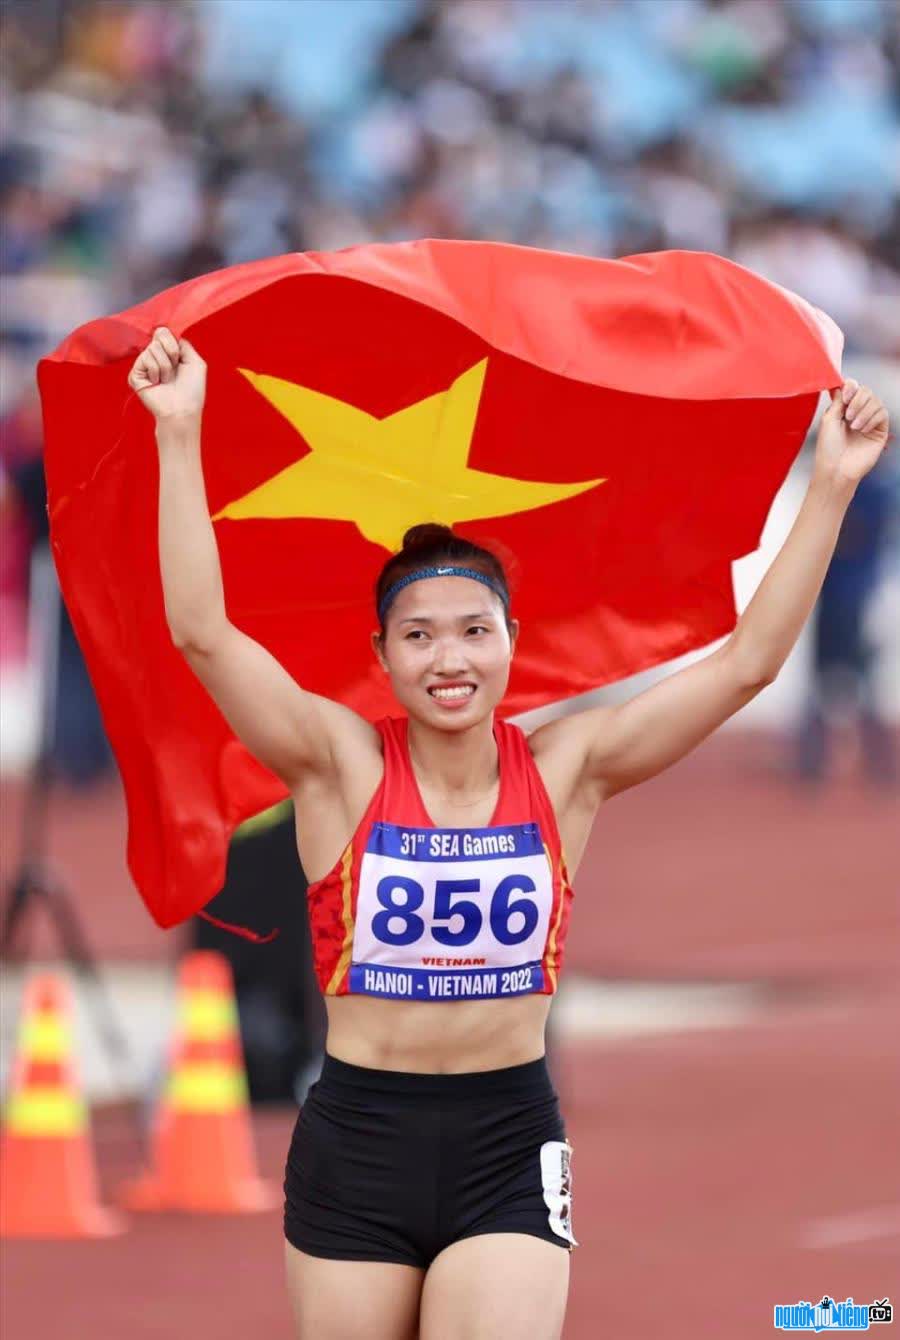 Hình ảnh vđv Nguyễn Linh Na giương cao lá quốc kỳ Việt Nam tại một đại hội thể thao